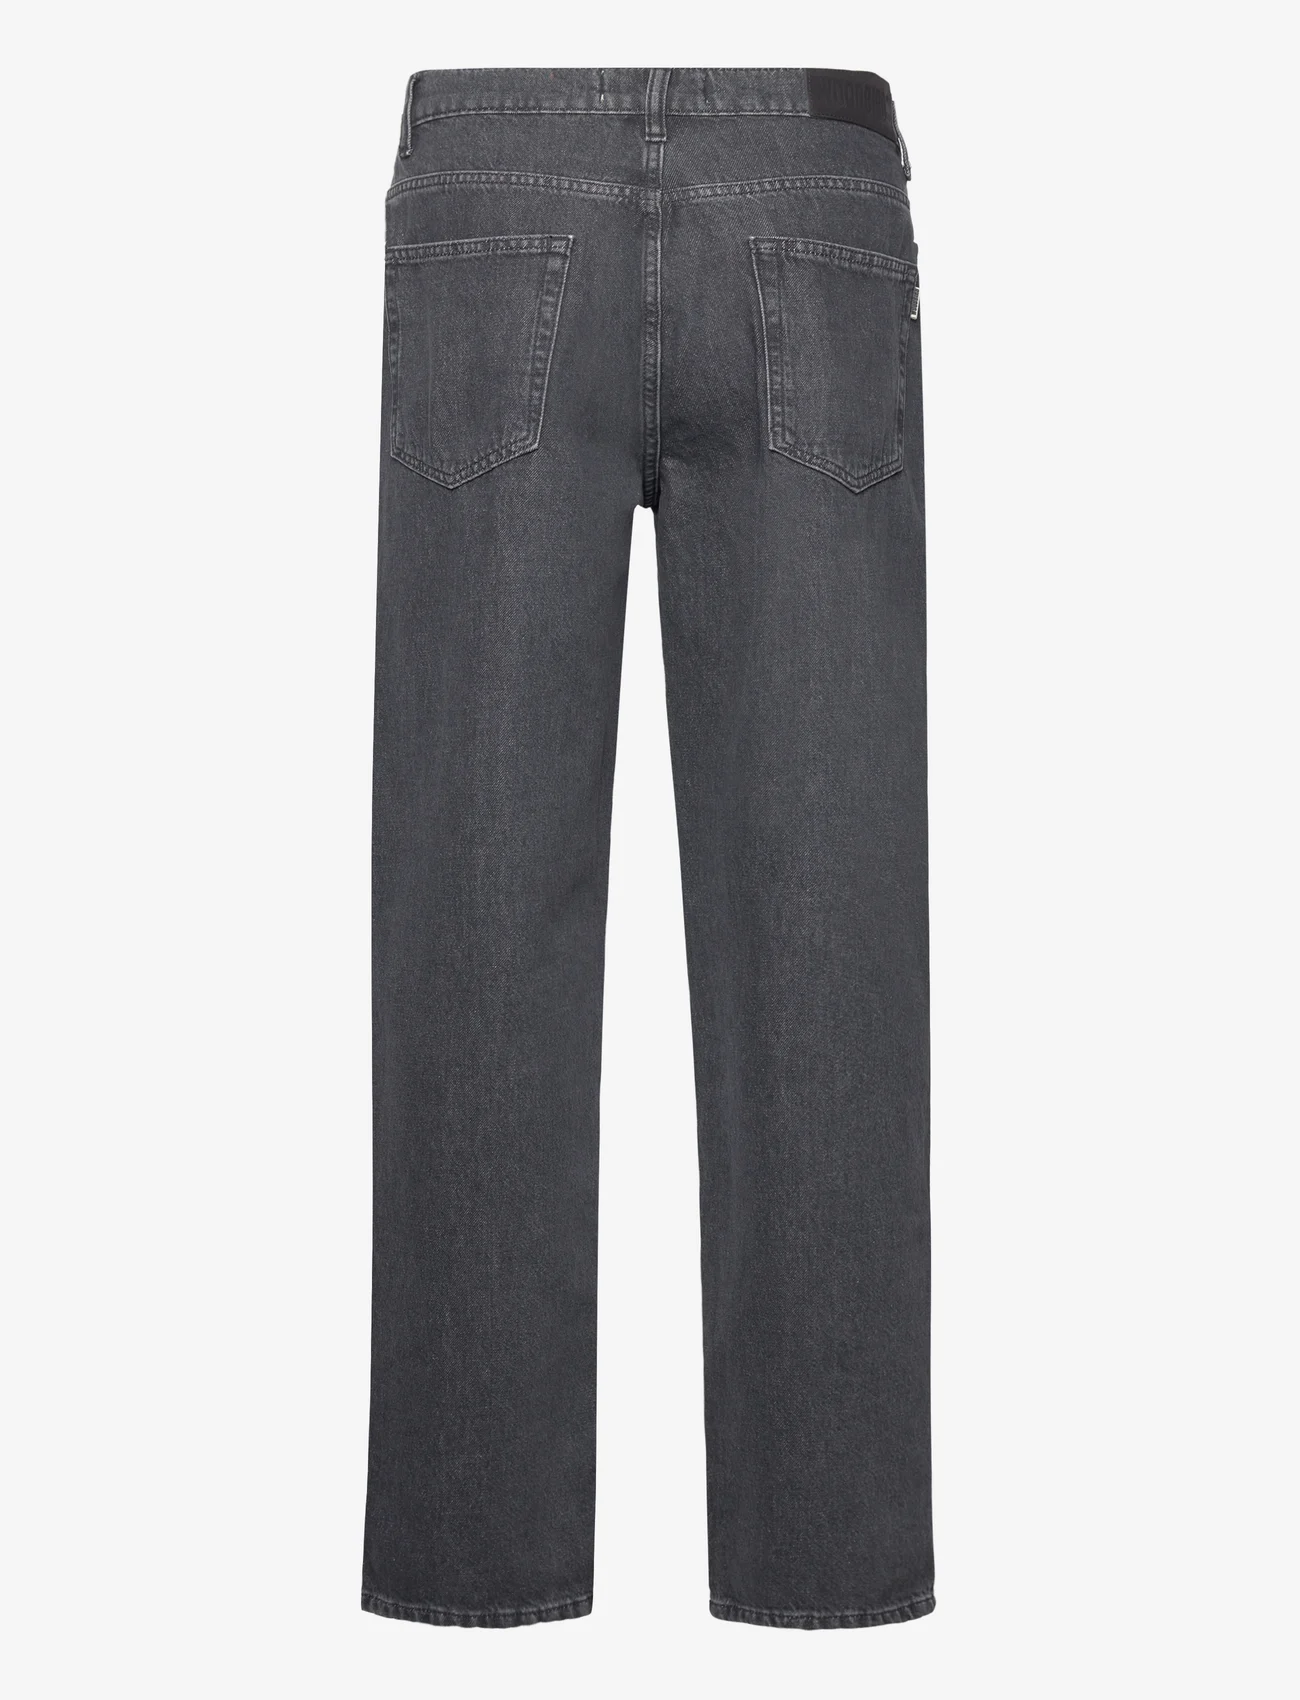 Woodbird - WBLeroy Coal Jeans - loose jeans - grey - 1